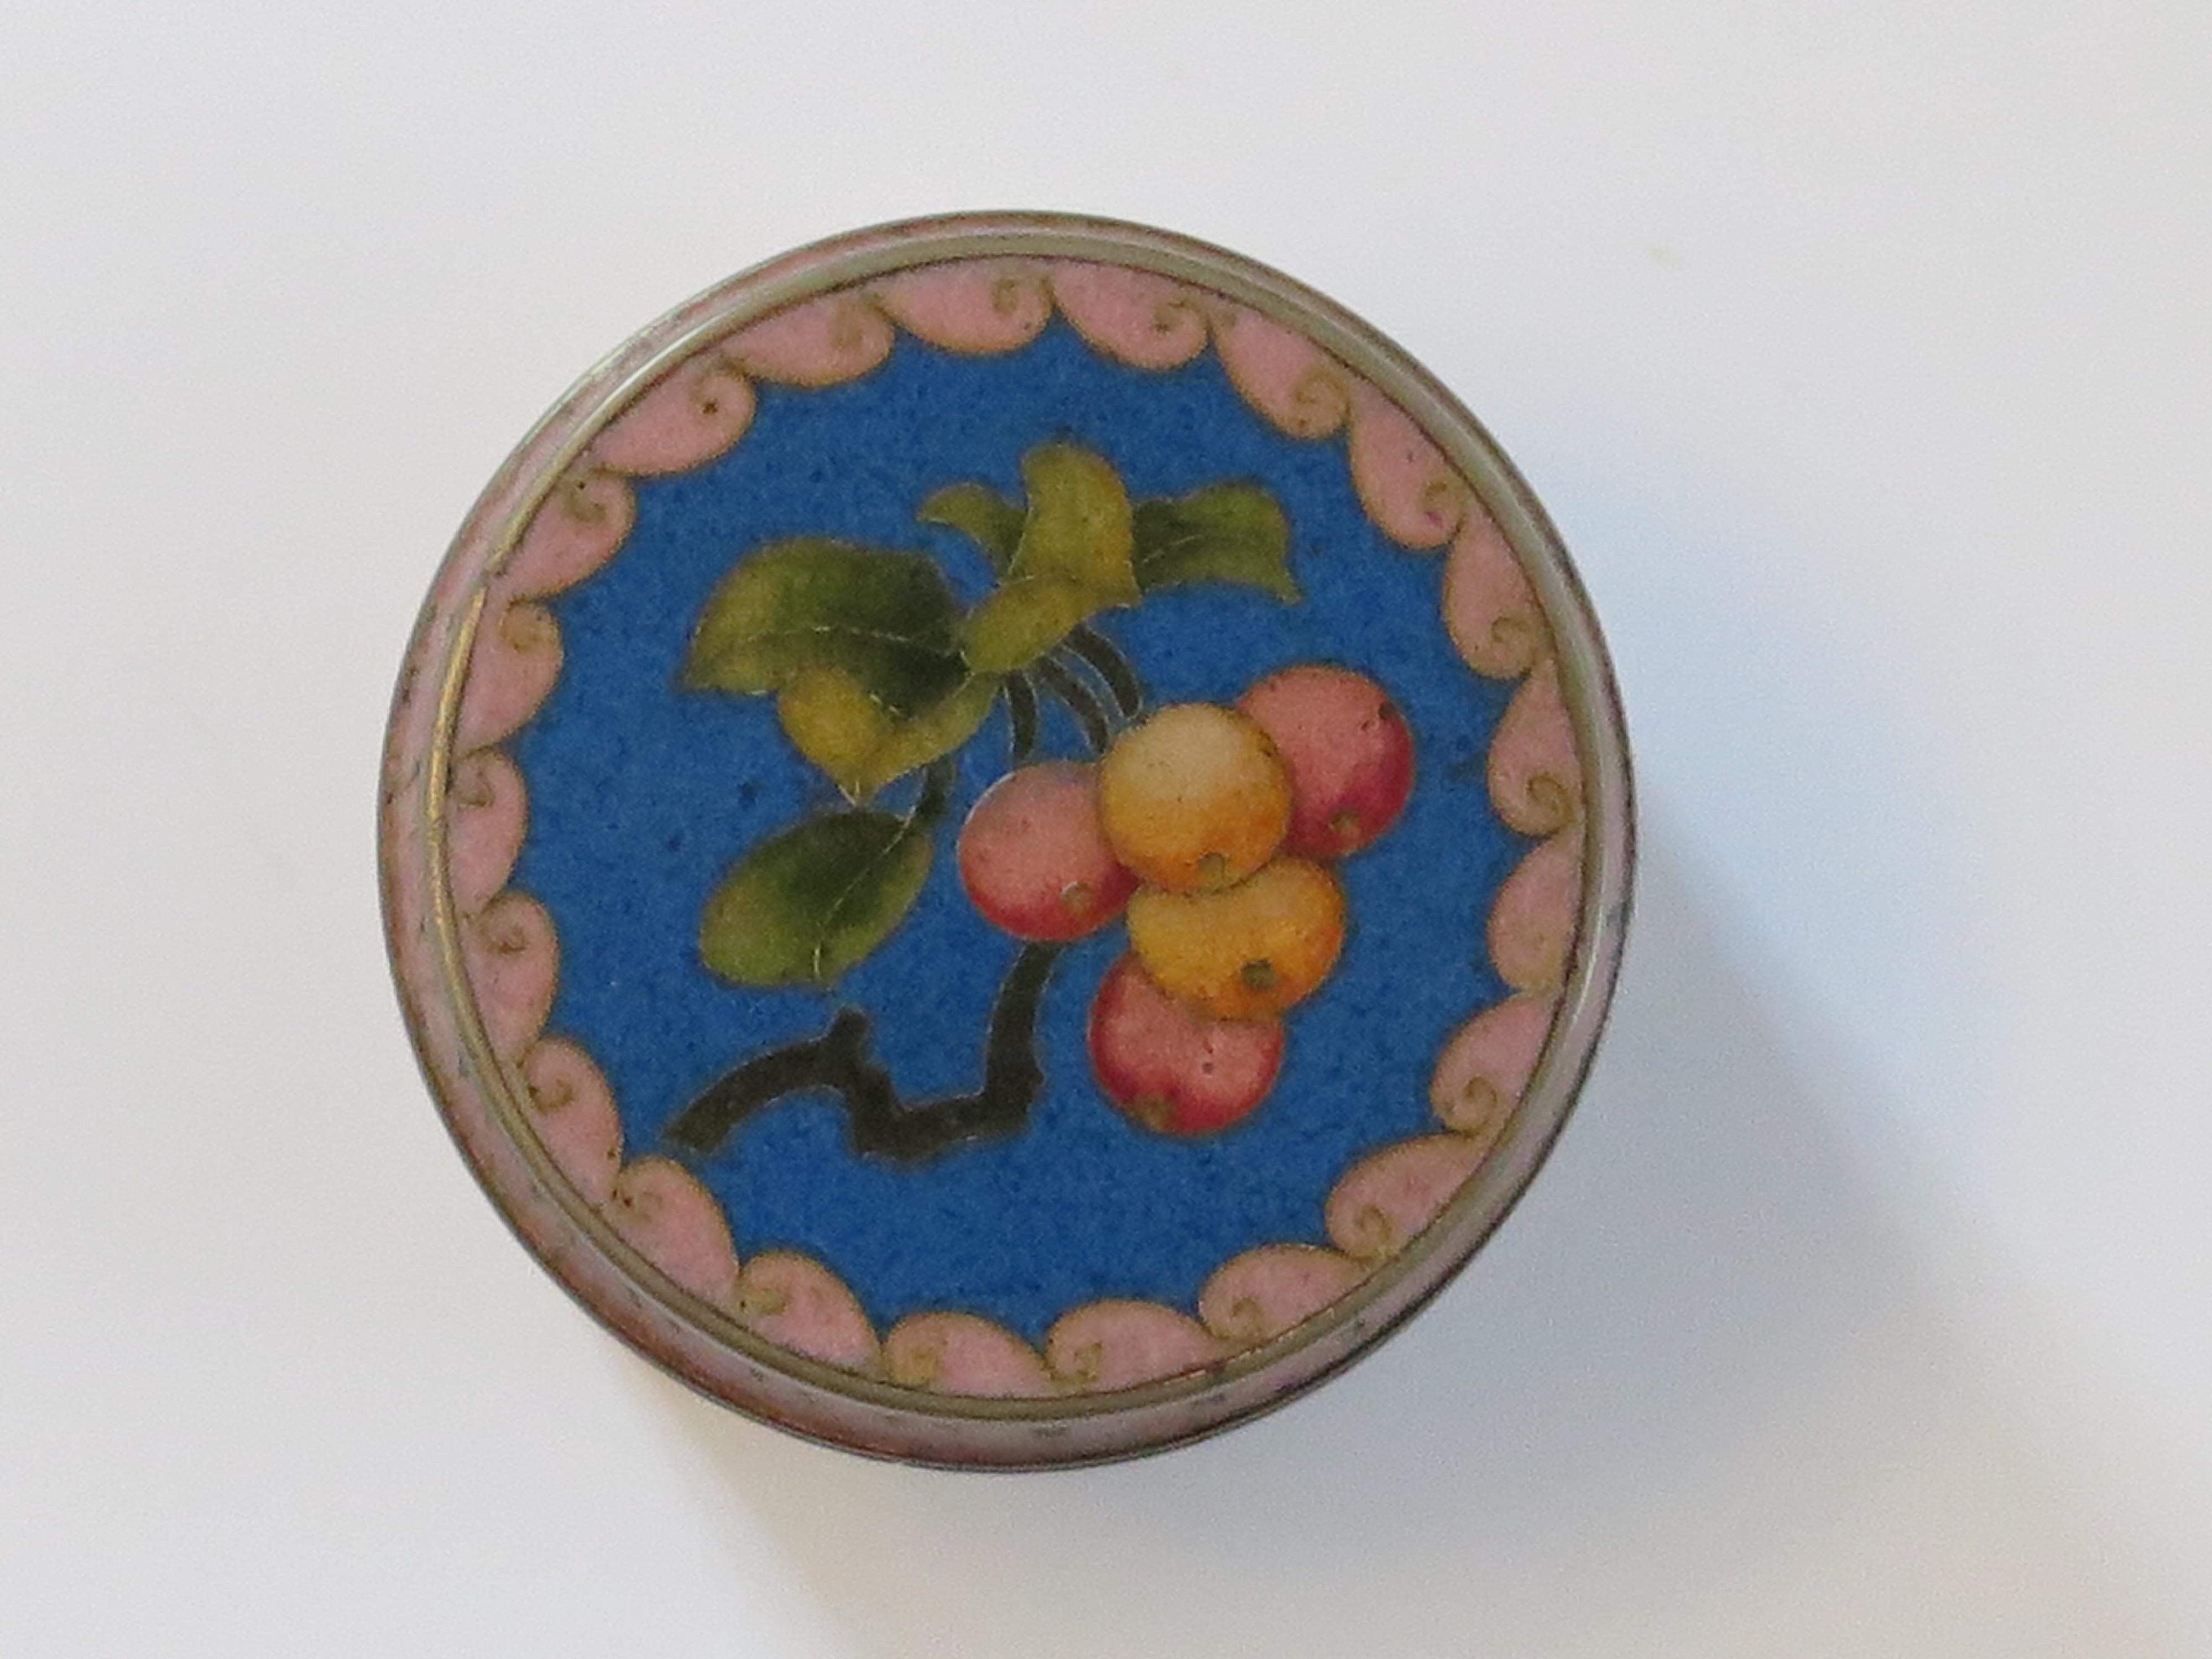 Dies ist eine sehr dekorative chinesische Cloisonné-Dose mit Deckel, die wir auf das 20. Jahrhundert, CIRCA 1930, datieren.

Die Dose hat eine zylindrische Form, mit ihrem ursprünglichen Deckel und ist sehr schön mit farbigen Emaillen auf blauem